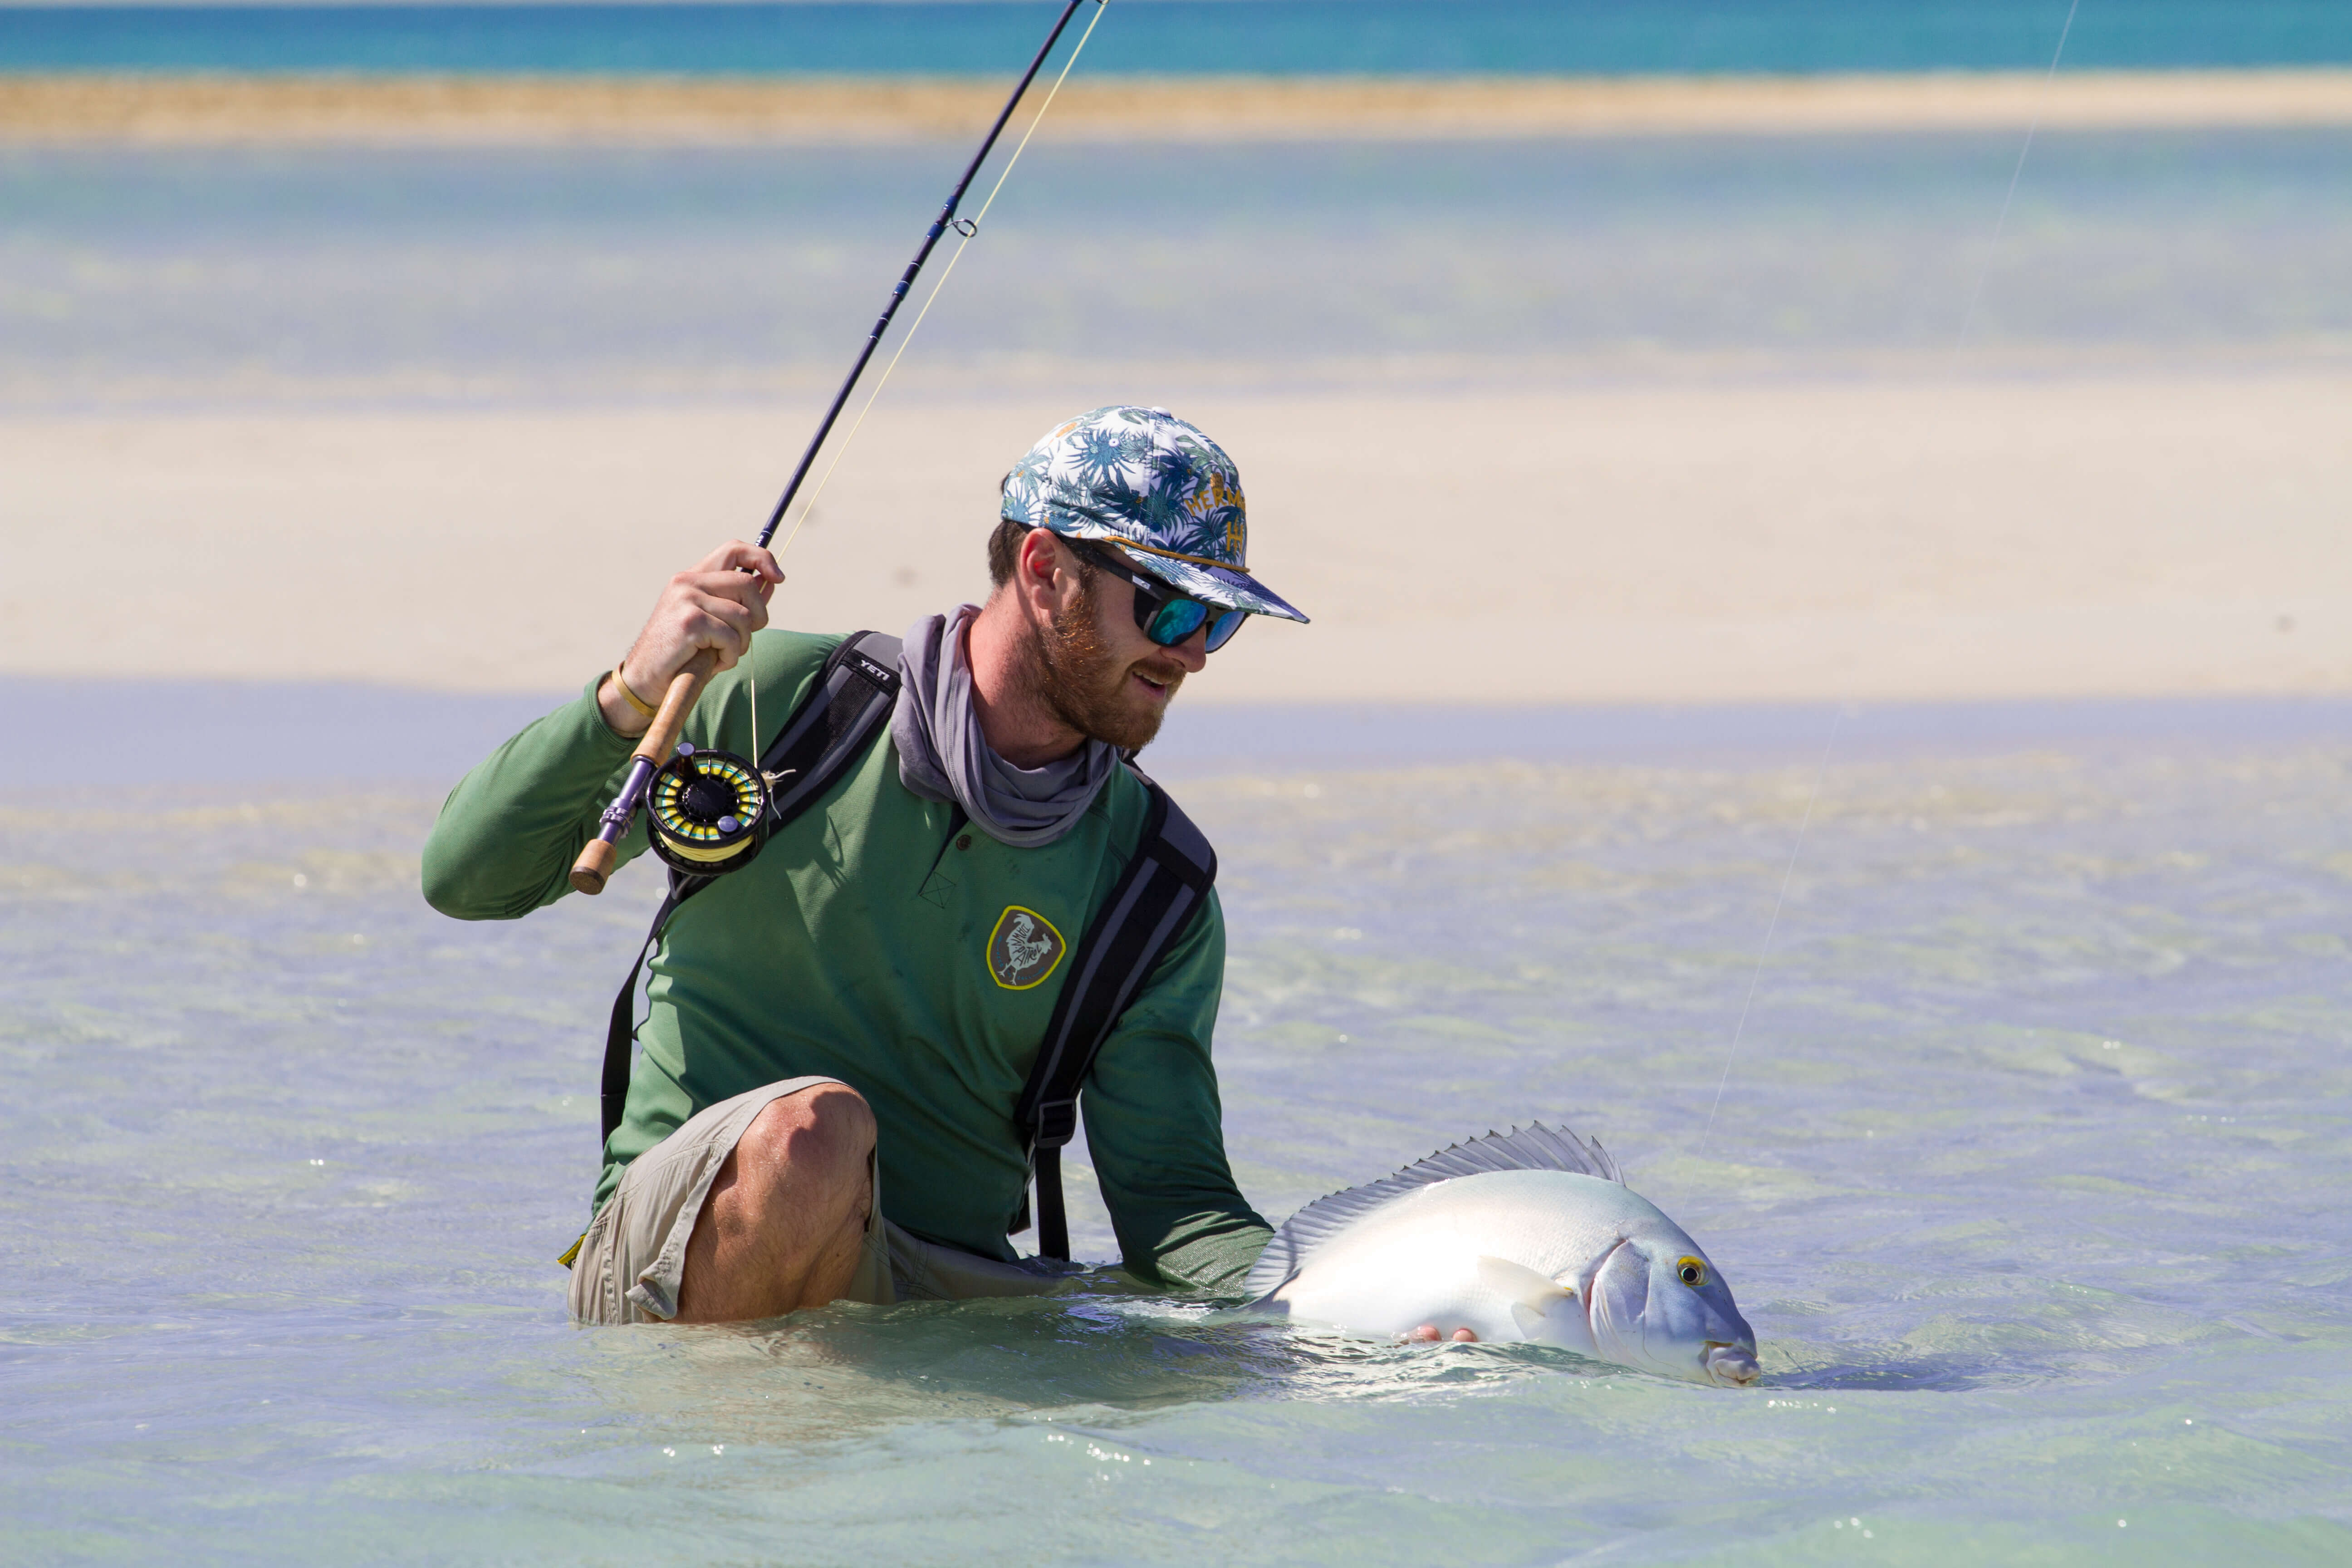 Un pescador arrodillado en el agua sosteniendo su caña de pescar con mosca y un pez que atrapó